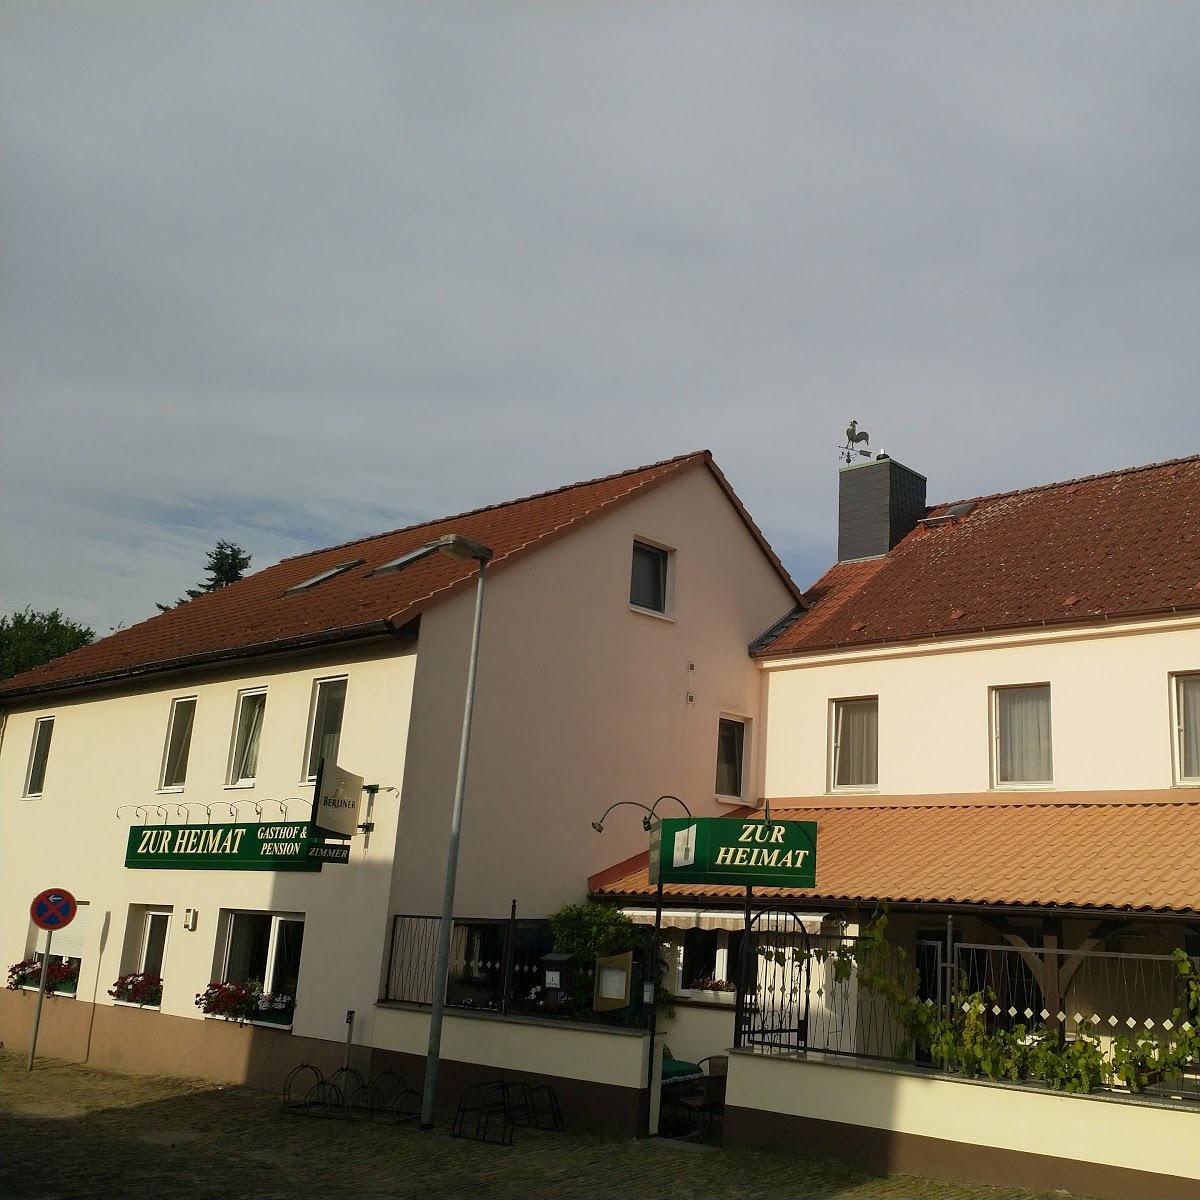 Restaurant "Gaststätte und Pension Zur Heimat" in Am Mellensee